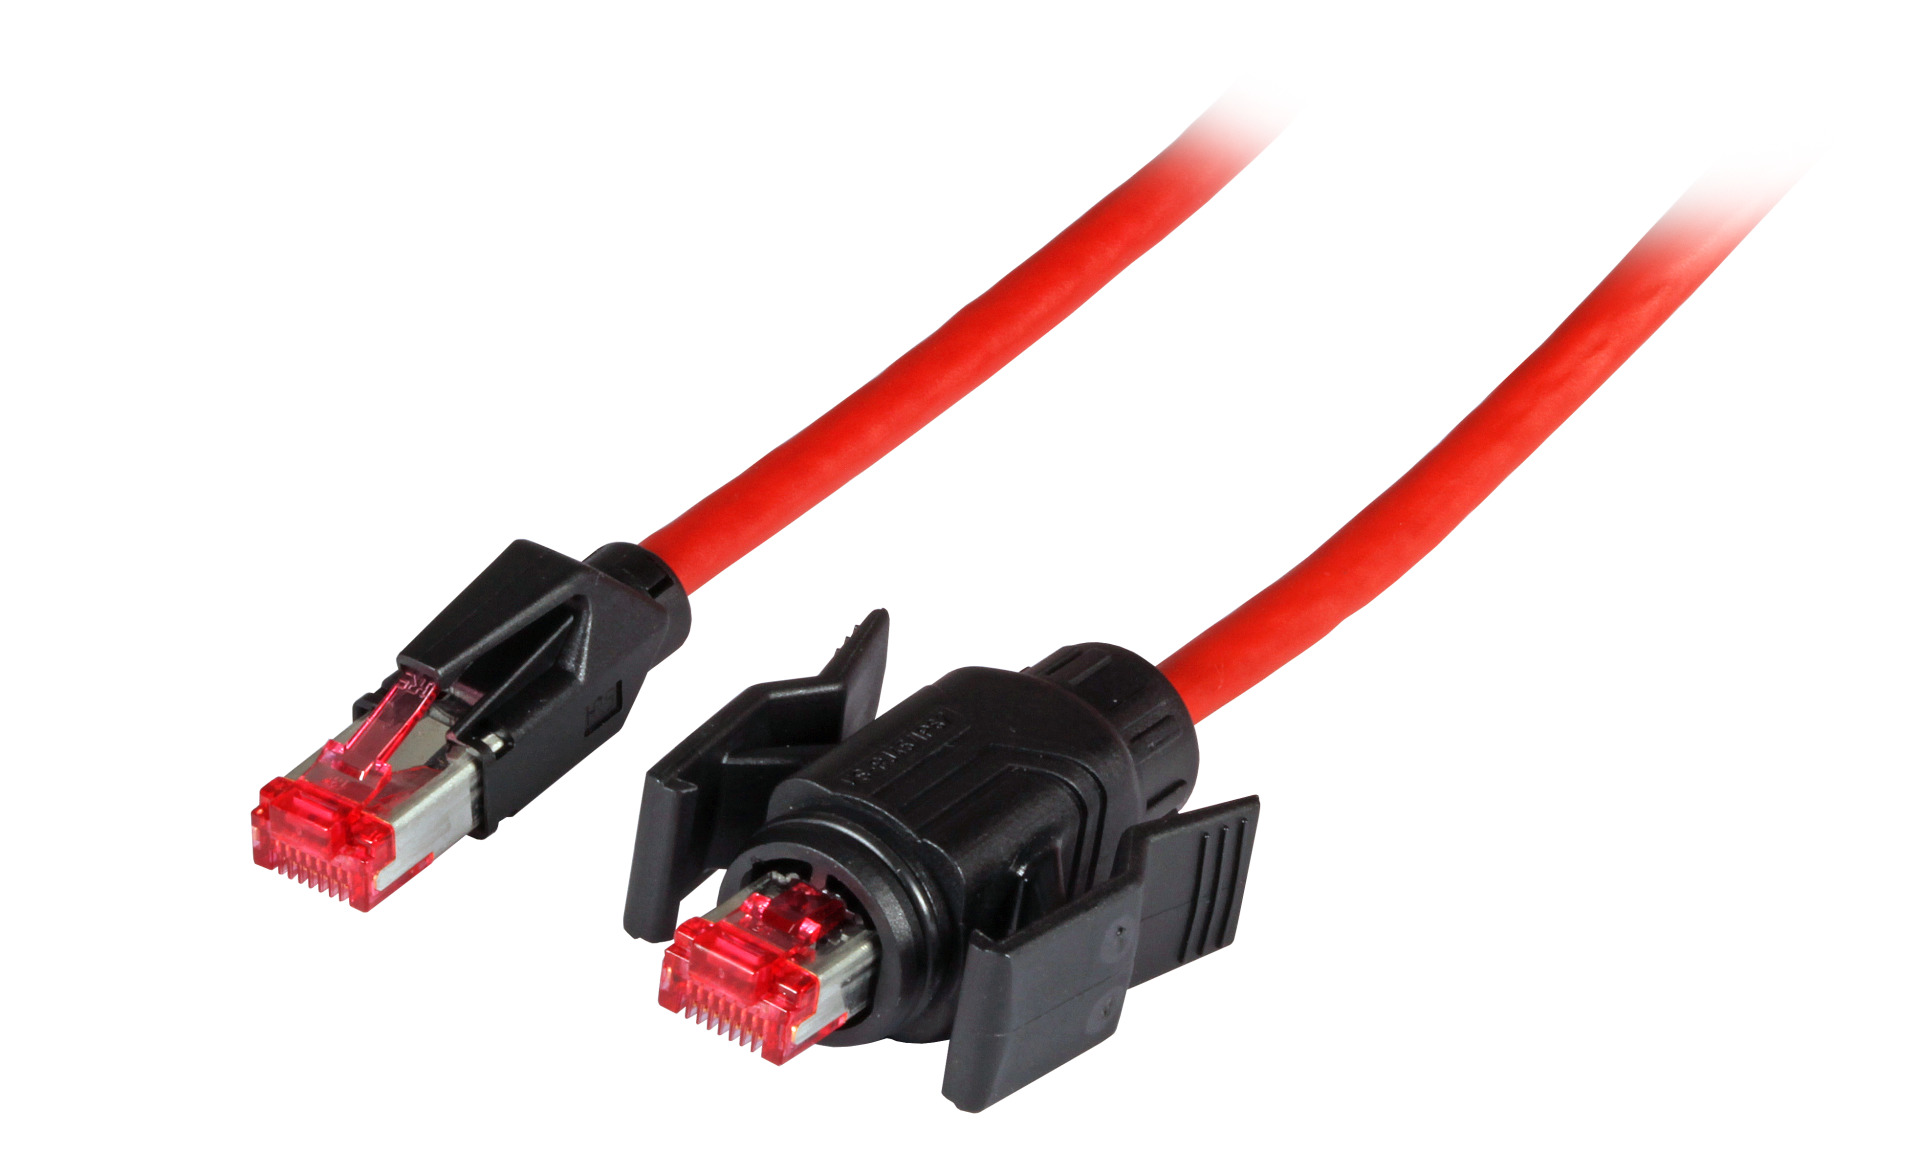 RJ45 Patch cable S/FTP, Cat.6A, IP67/TM21 / TM21, PUR, for 53730.1V2, 0,5m